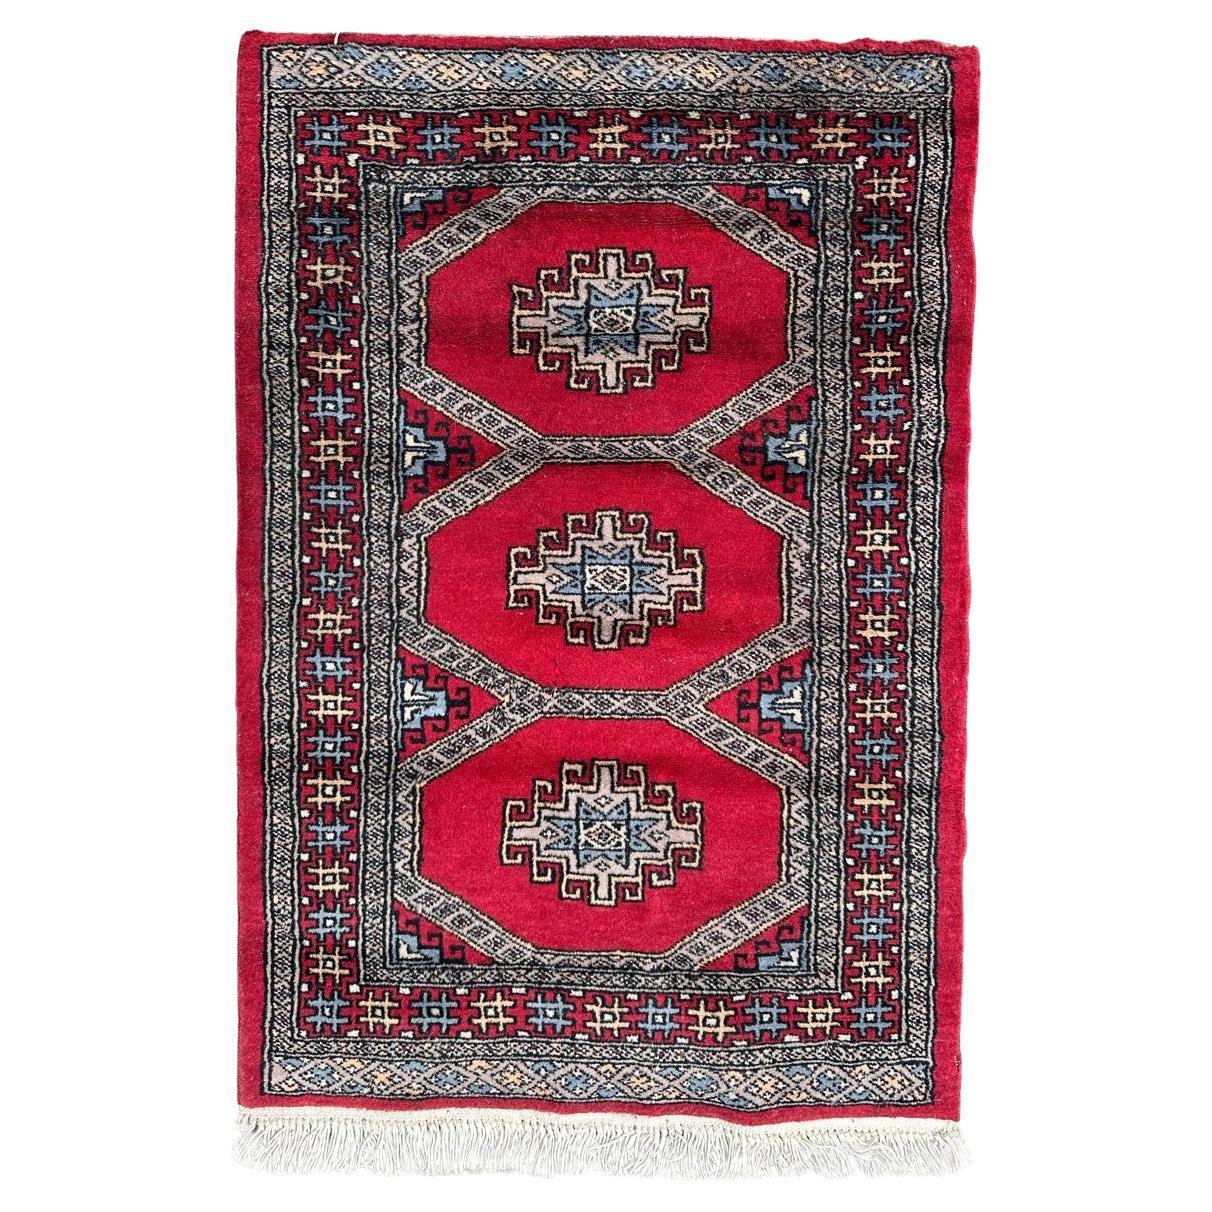  Kleiner, hübscher Pakistanischer Vintage-Teppich